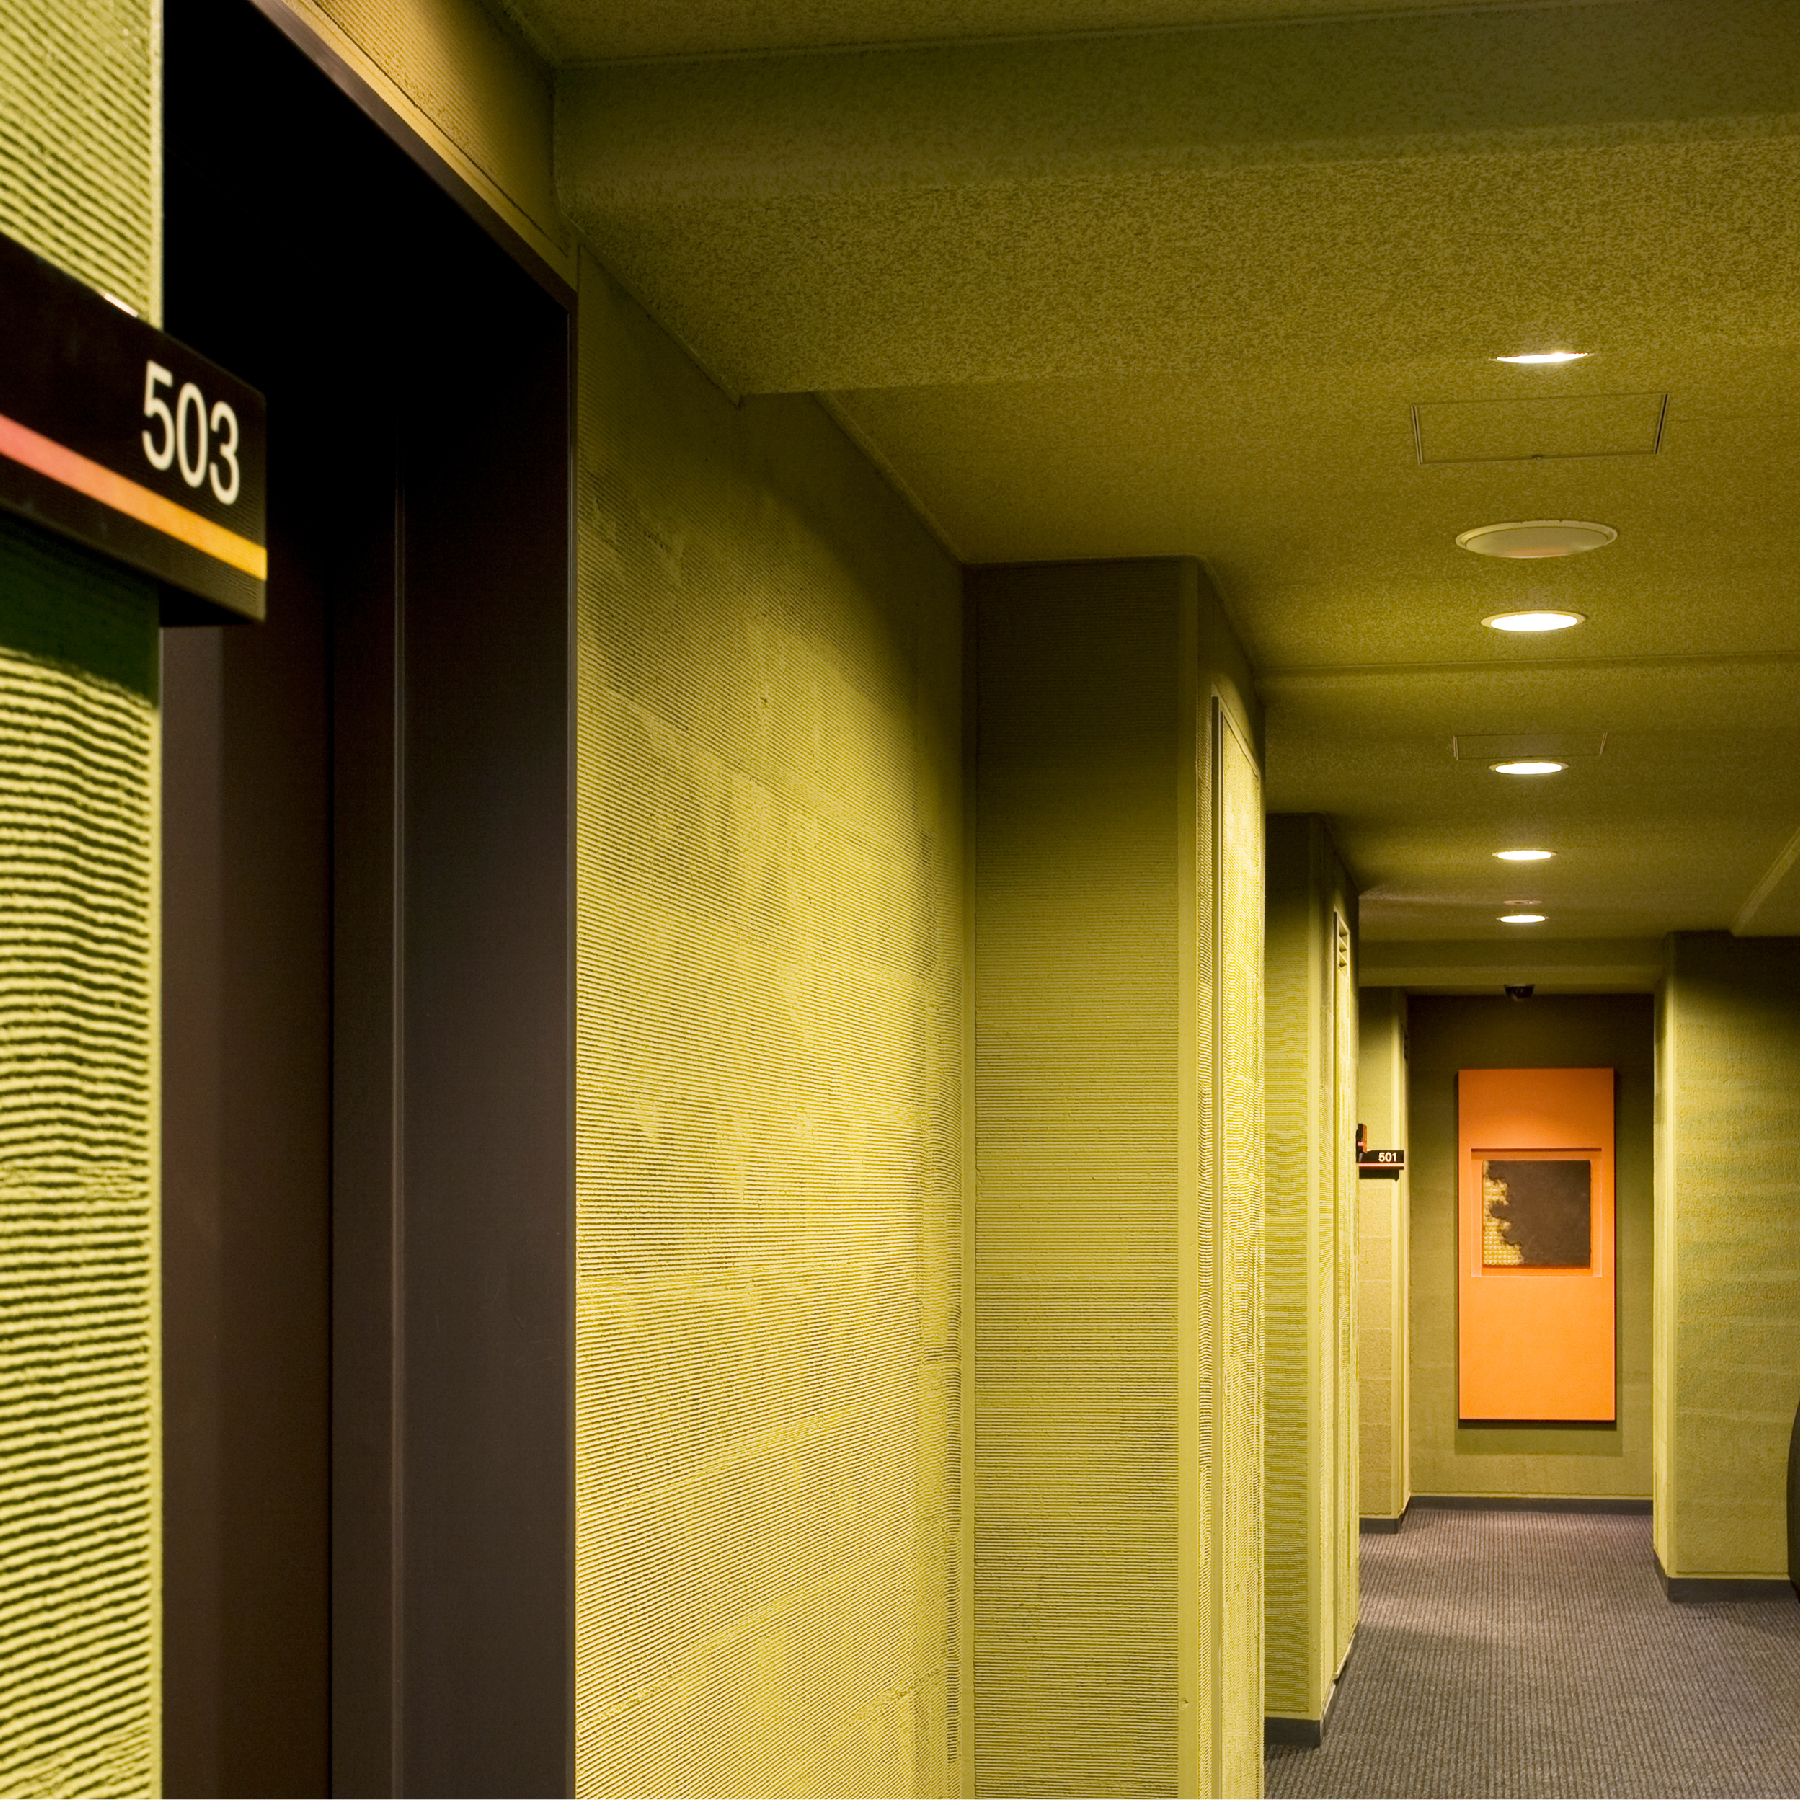 【廊下】客室フロアのコリドーは自然を感じる外向き廊下。お召し物の調節をお願いいたします